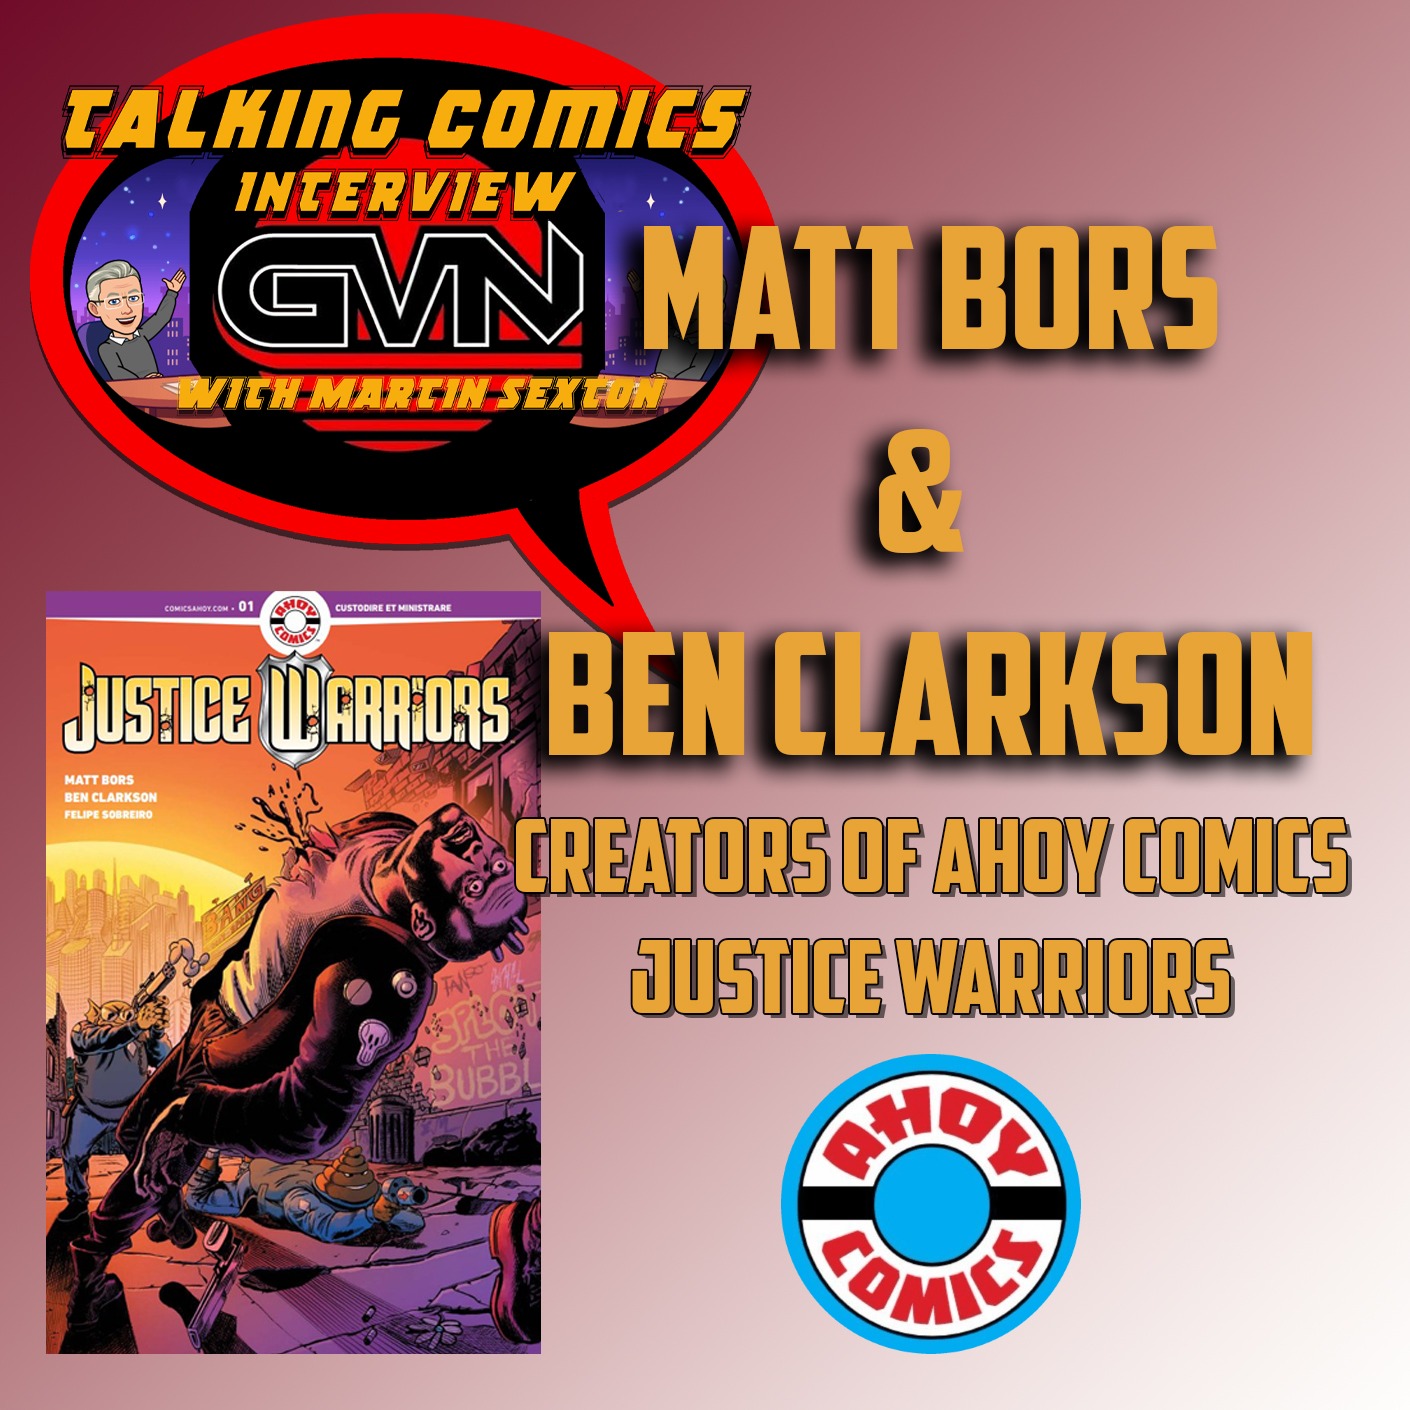 GVN Talking Comics Interview With Matt Bors & Ben Clarkson